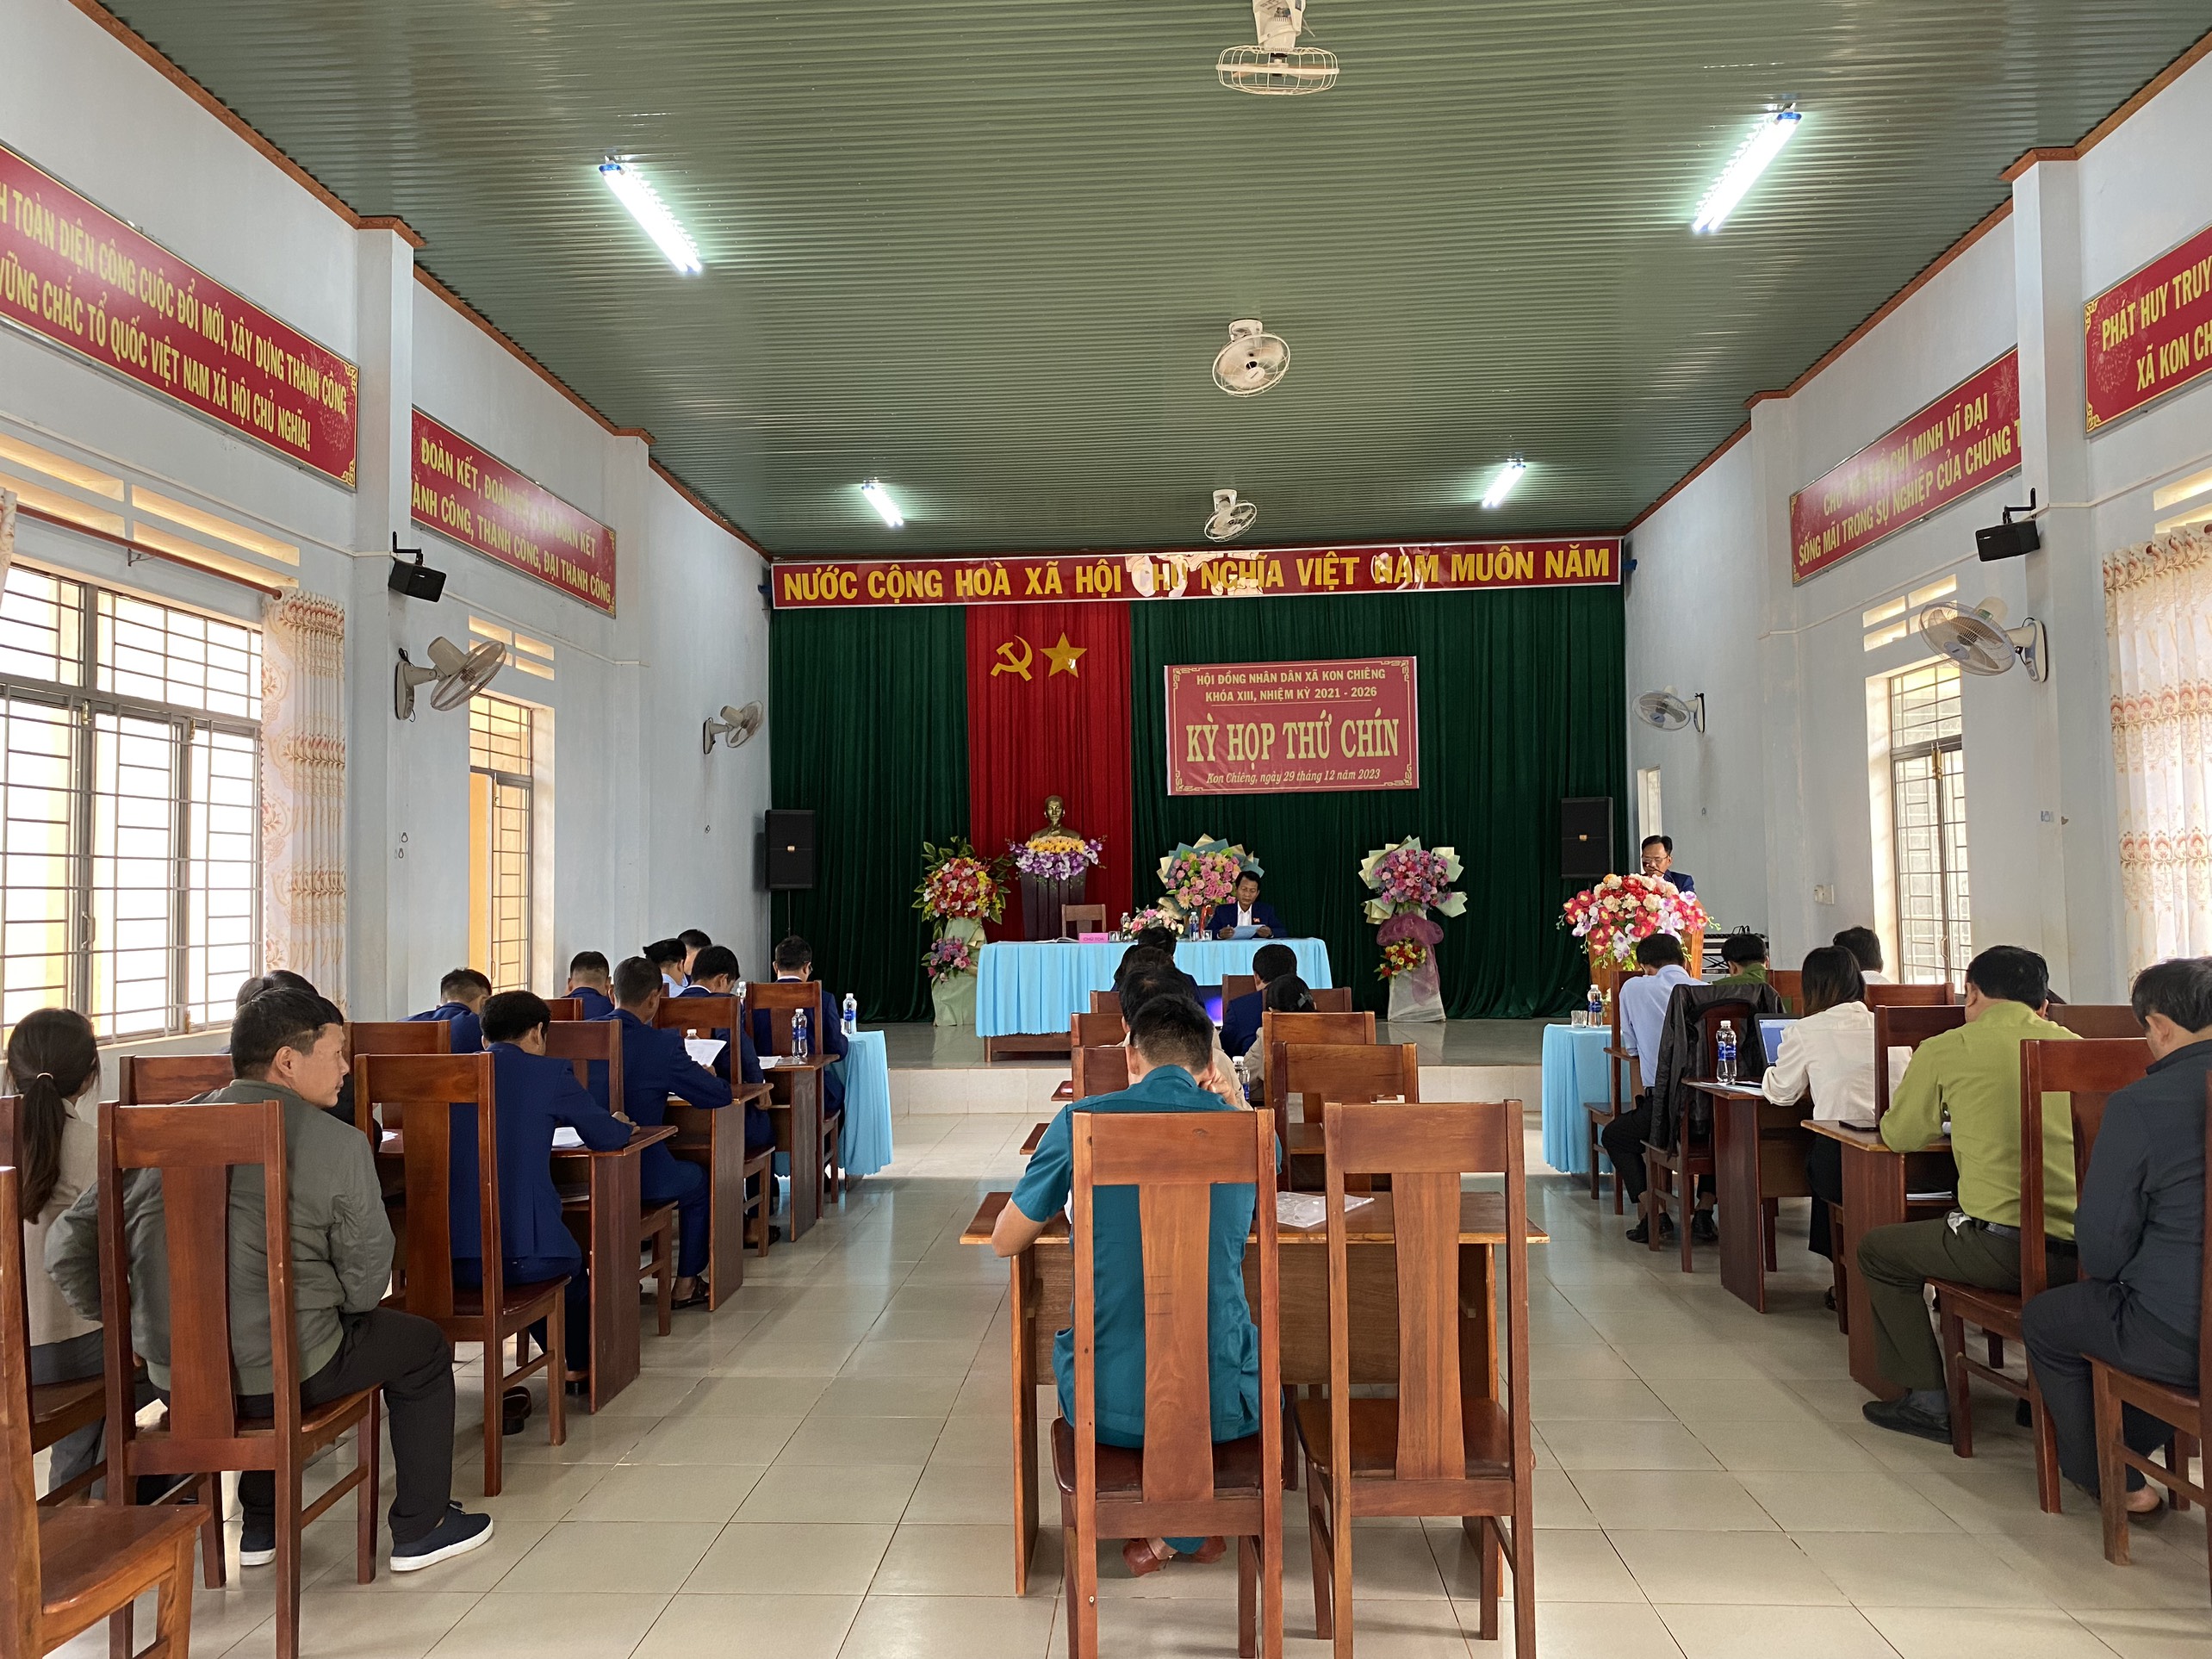 Hội đồng nhân dân xã Kon Chiêng tổ chức kỳ họp thứ chín HĐND xã khó...